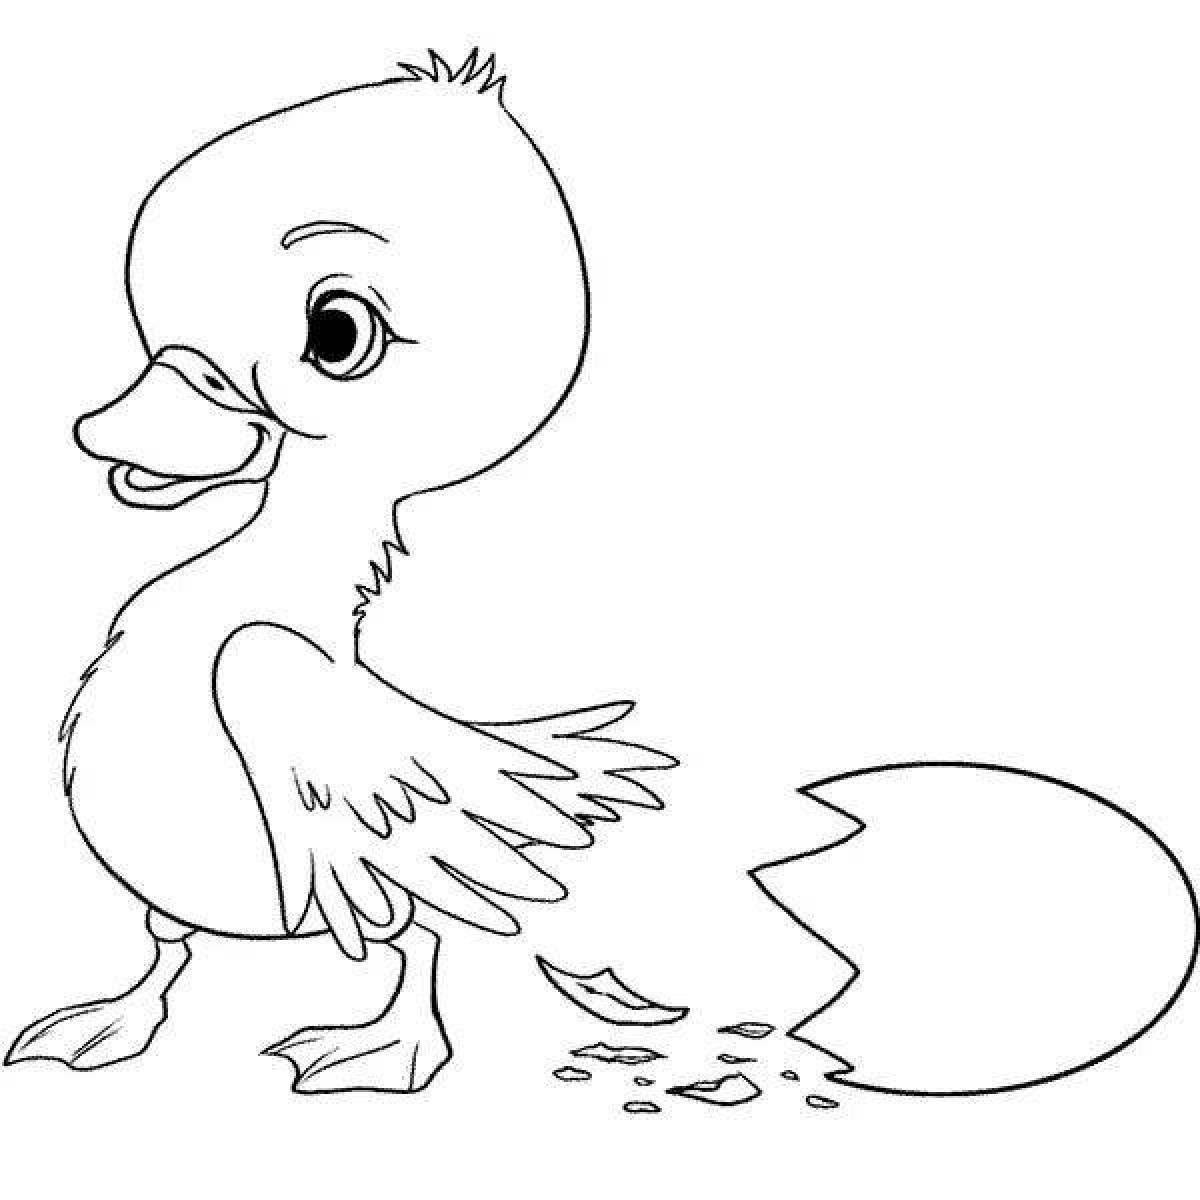 Rampant gosling coloring book